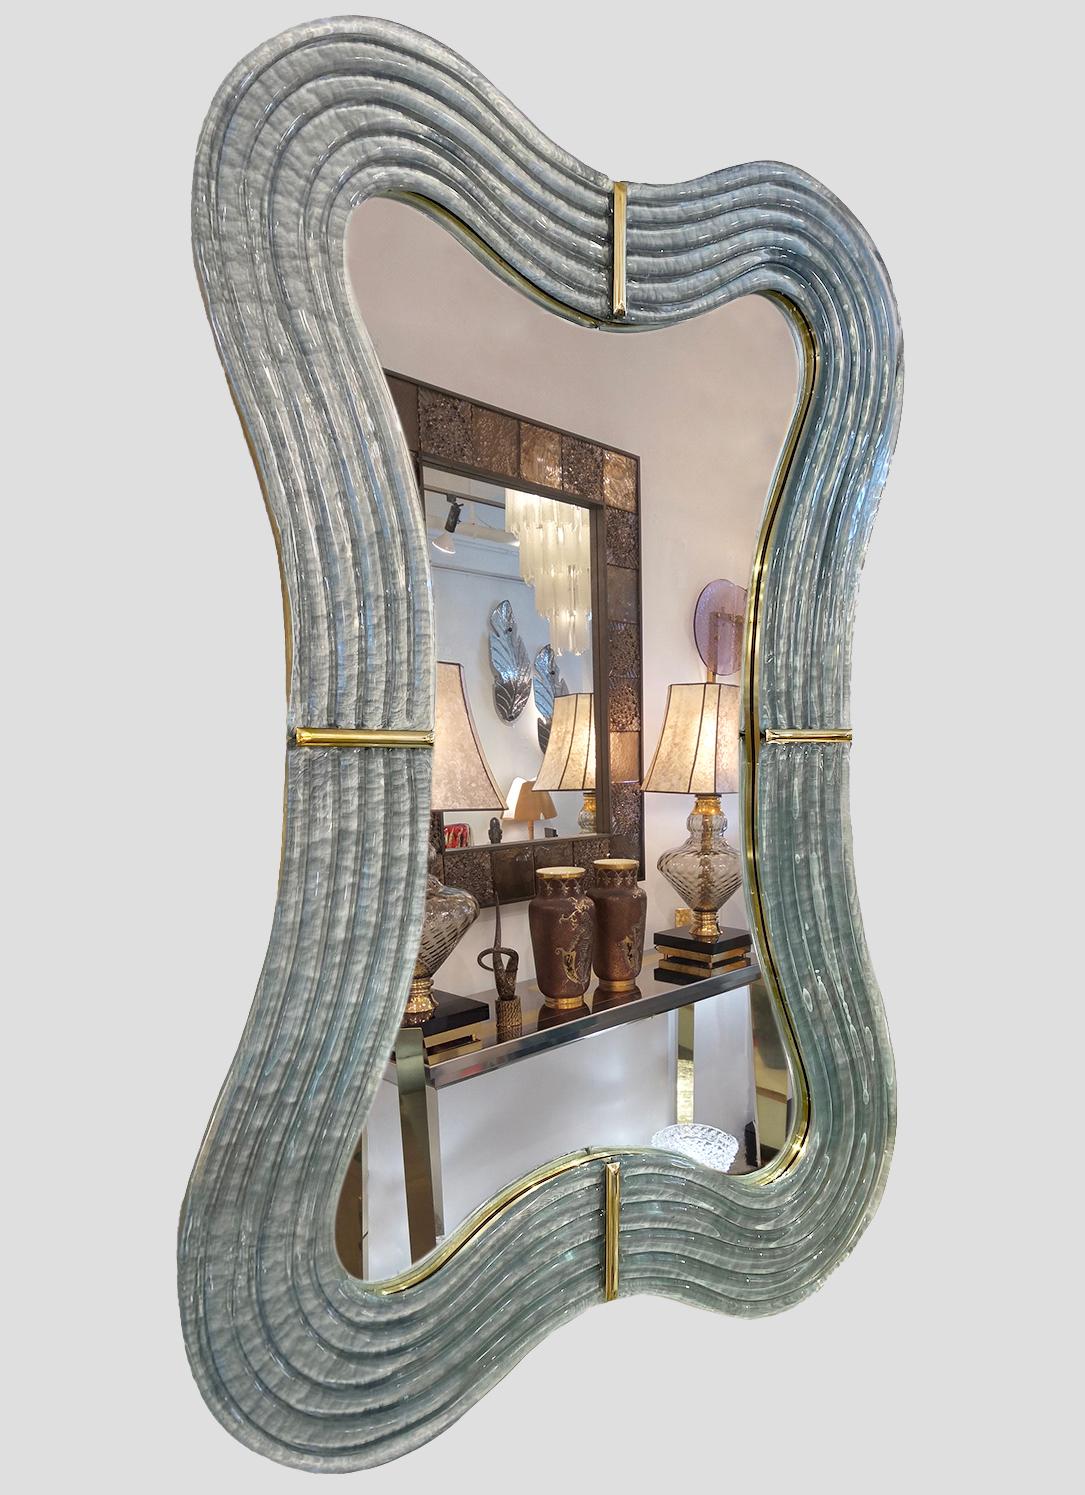 Dieser venezianische Spiegel vermittelt mit seiner geschwungenen Silhouette ein sinnliches, beruhigendes Gefühl und wird in Italien von Hand gefertigt. Die sexy gewellte Form präsentiert exquisite Handwerkskunst: Die handgeschnitzte Holzrückwand,